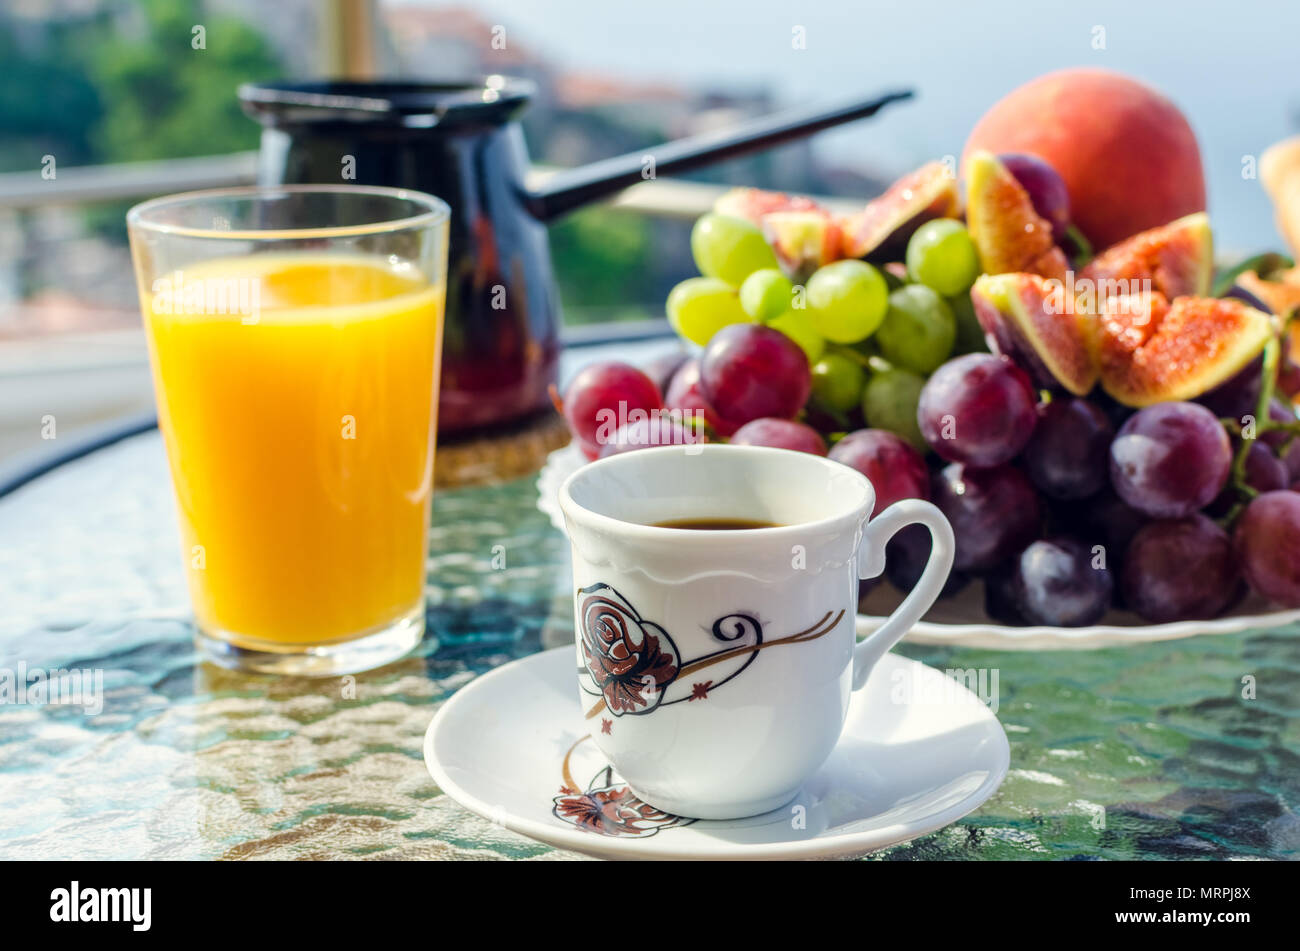 Petit déjeuner sain sur la table avec une tasse de café, un verre de jus d'orange, une plaque de la bourgogne blanc et raisins, figues, de pêche et de café turc Banque D'Images